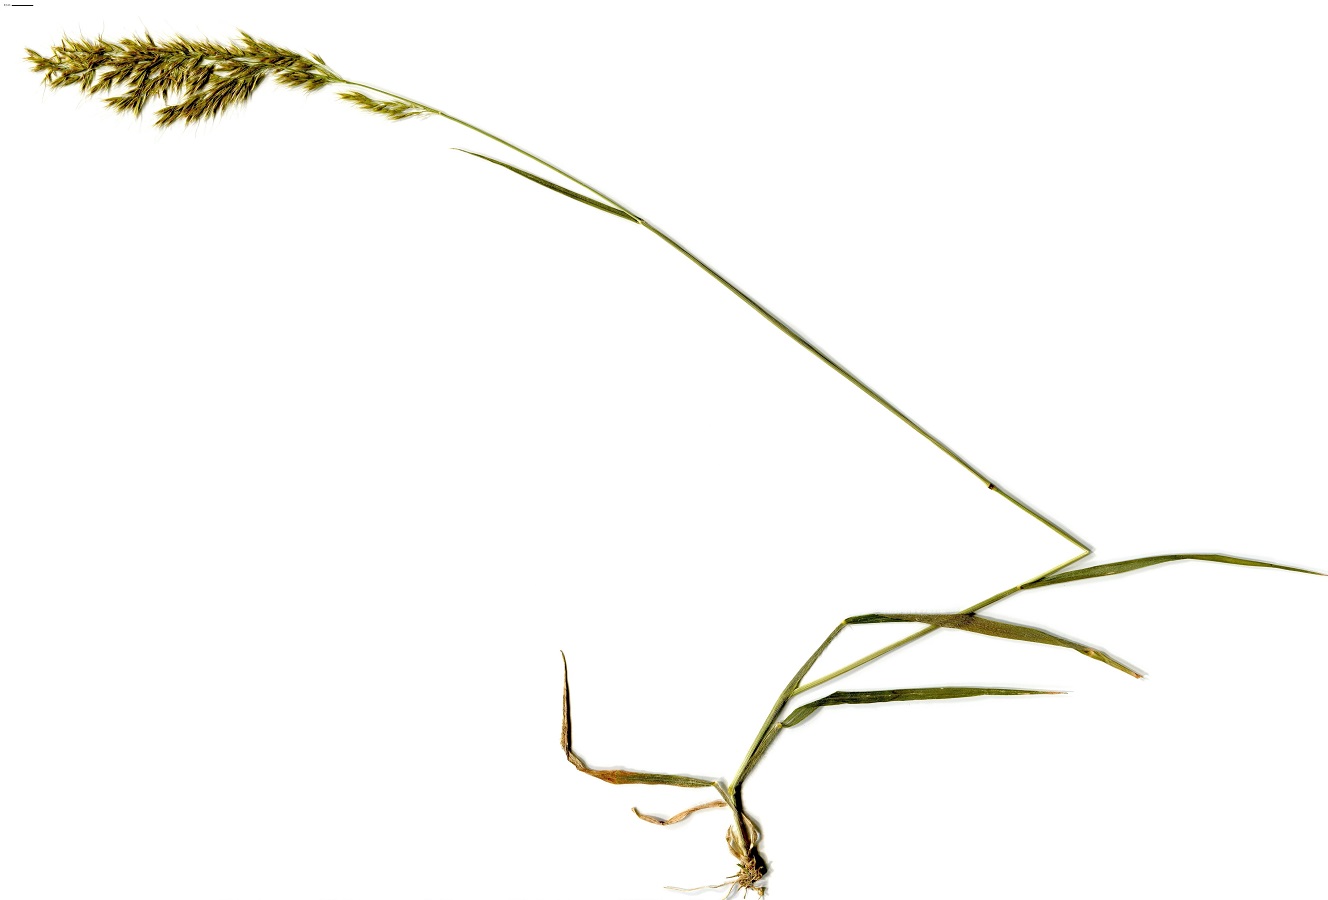 Trisetum flavescens subsp. flavescens (Poaceae)